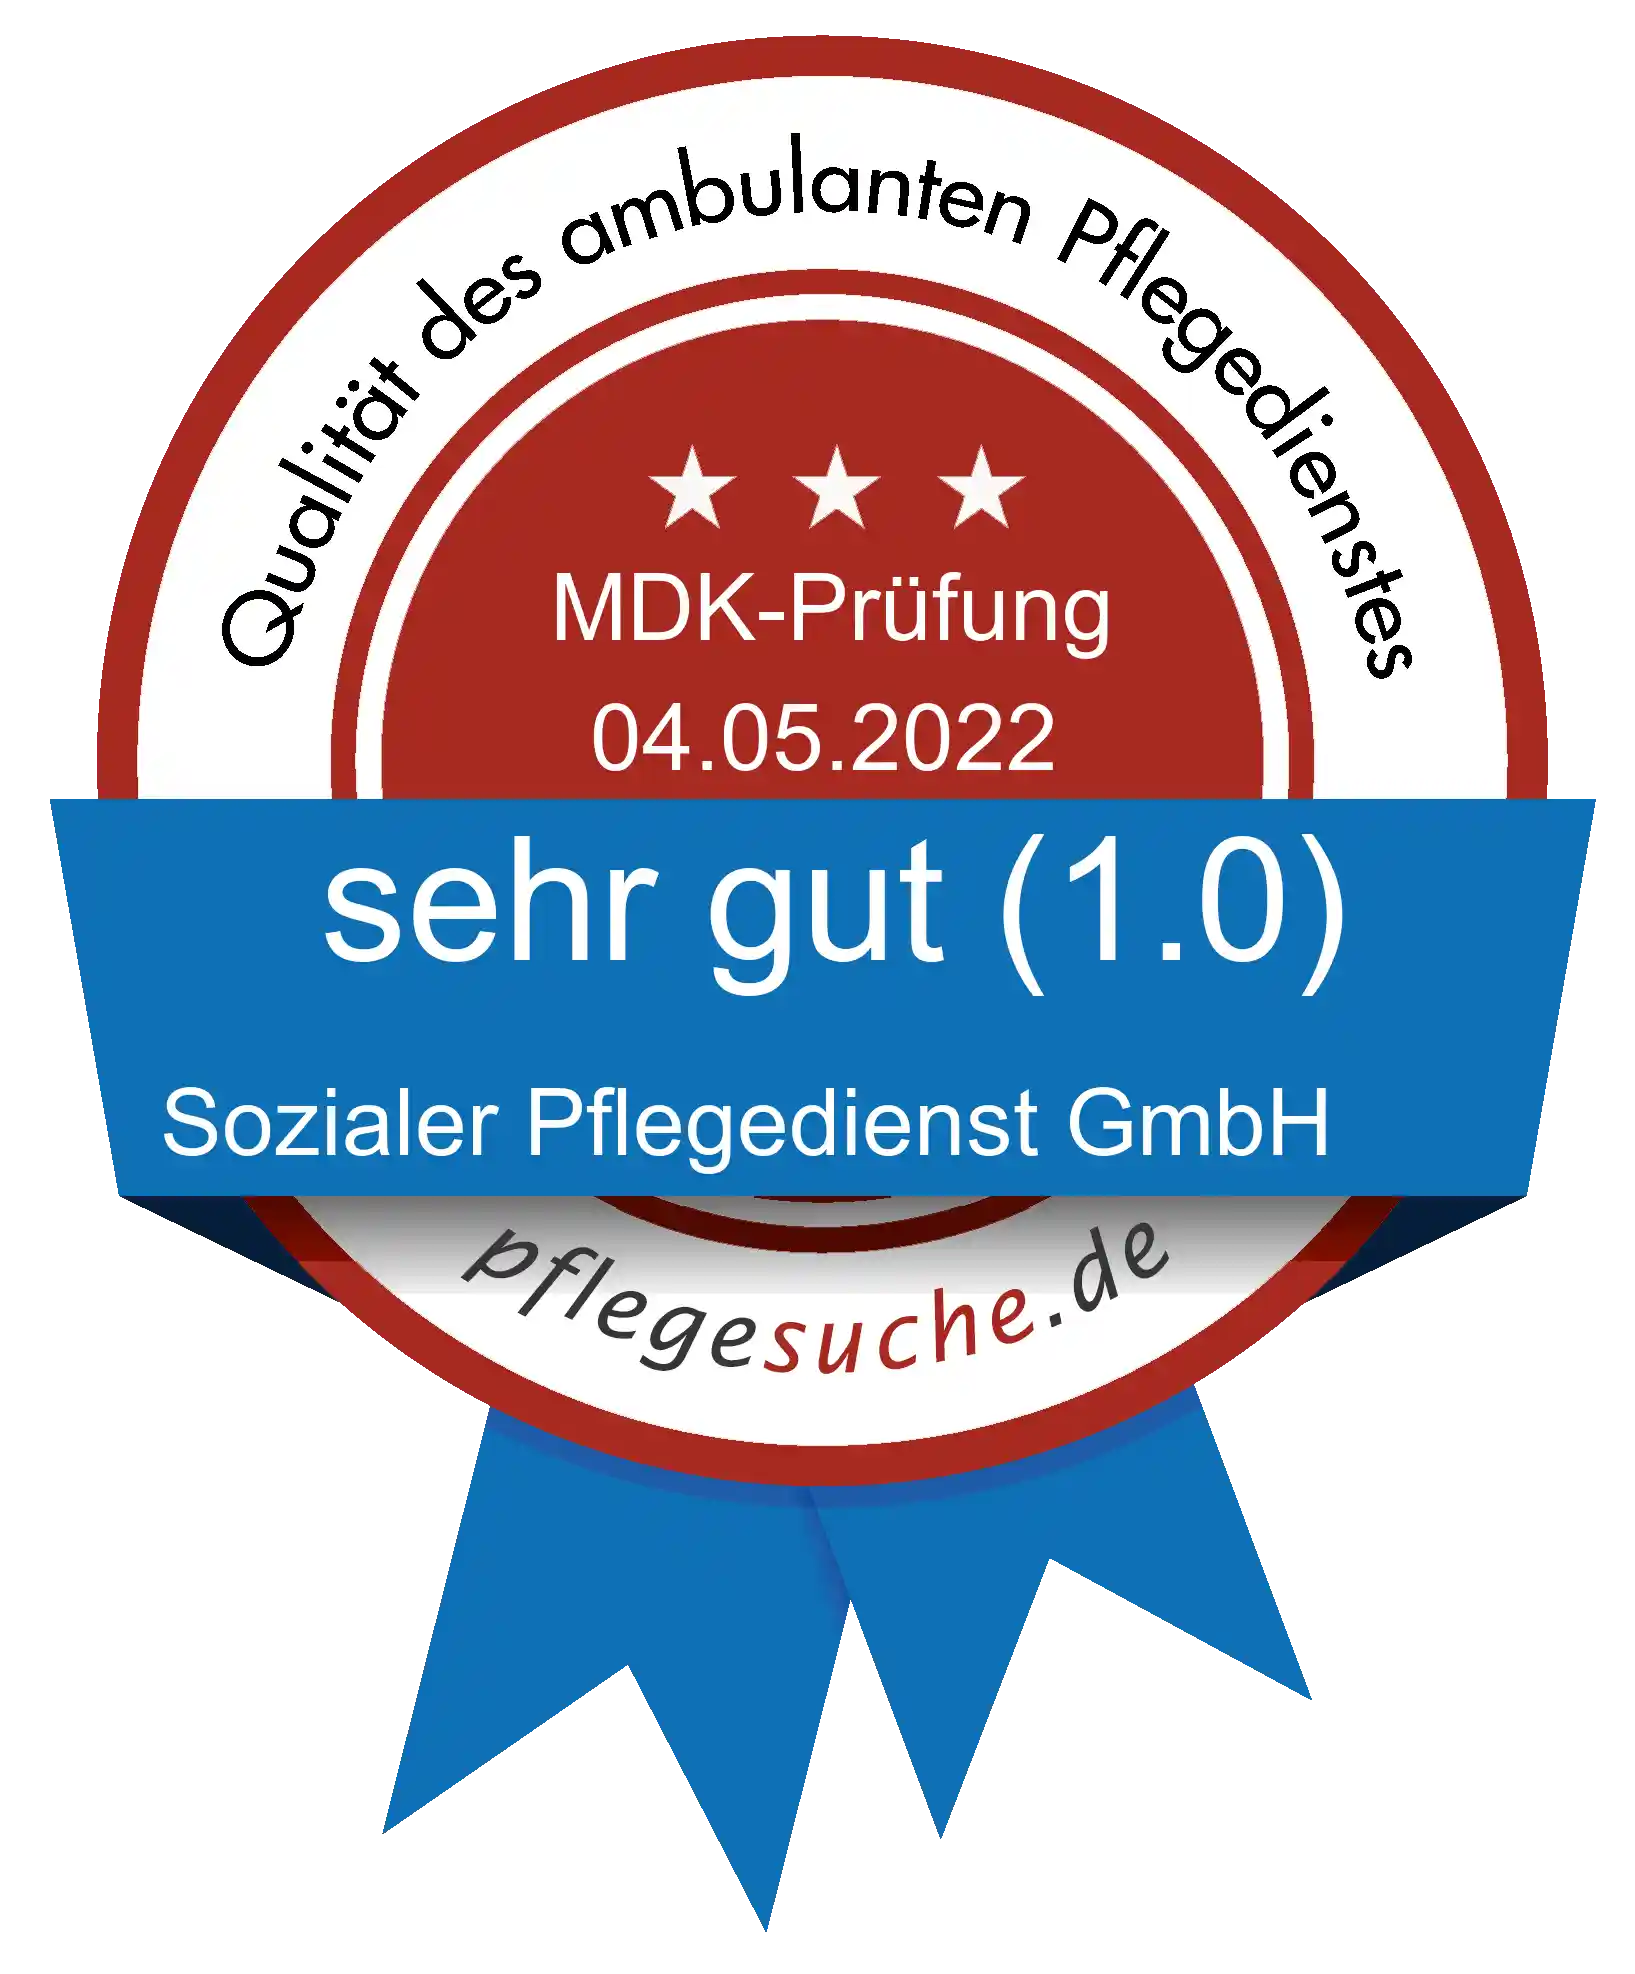 Siegel Benotung: Sozialer Pflegedienst GmbH